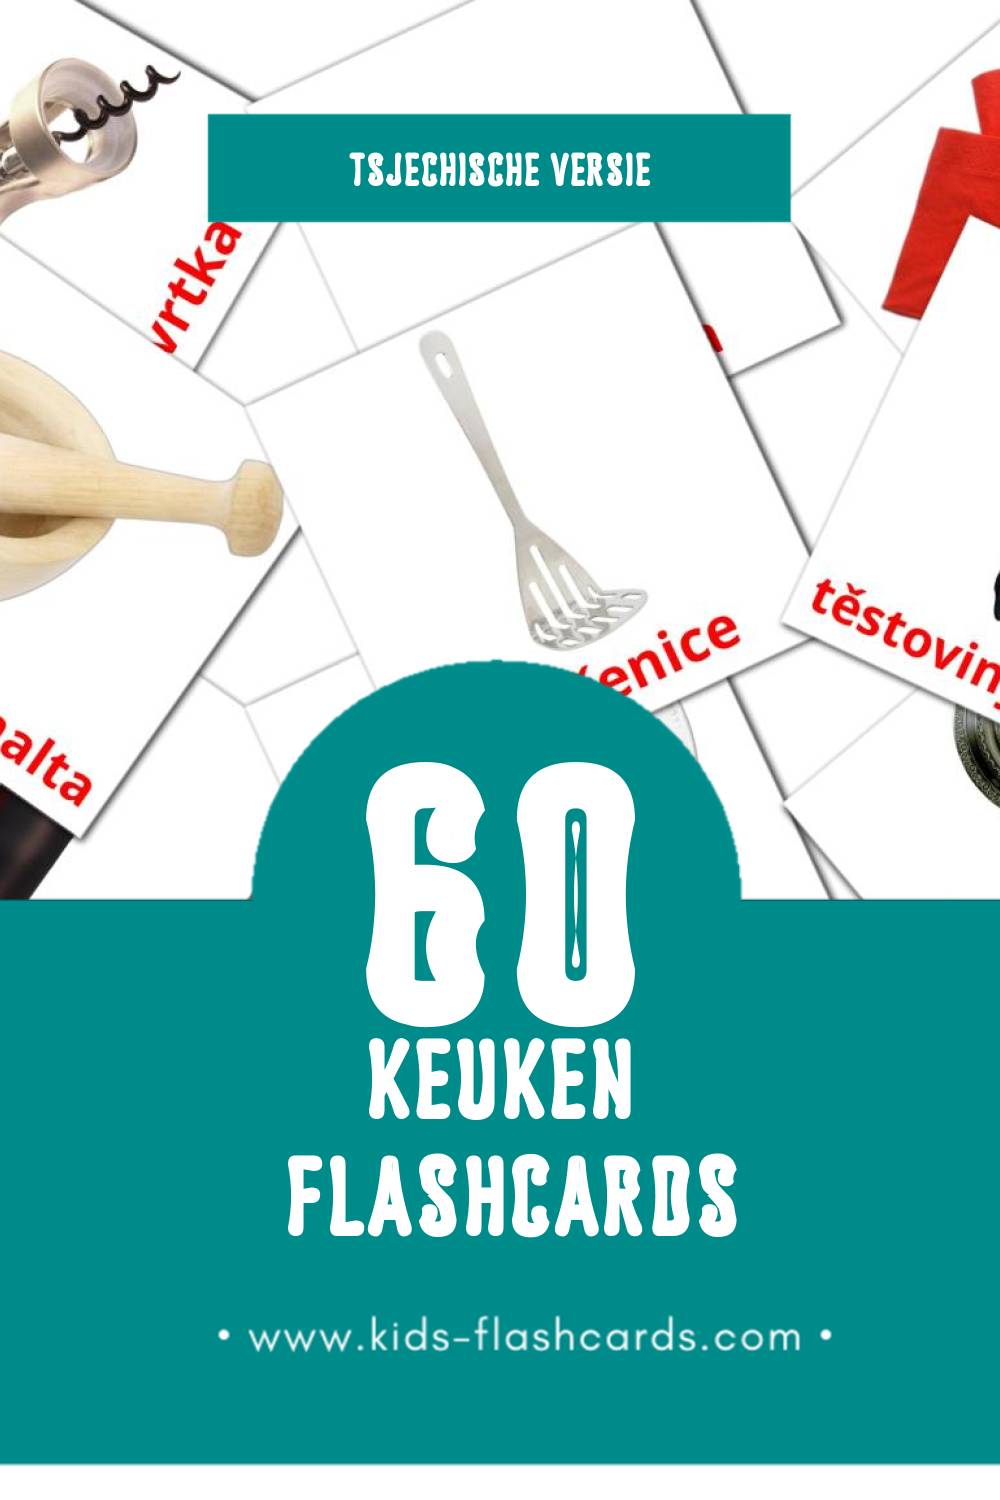 Visuele Kuchyně Flashcards voor Kleuters (60 kaarten in het Tsjechisch)